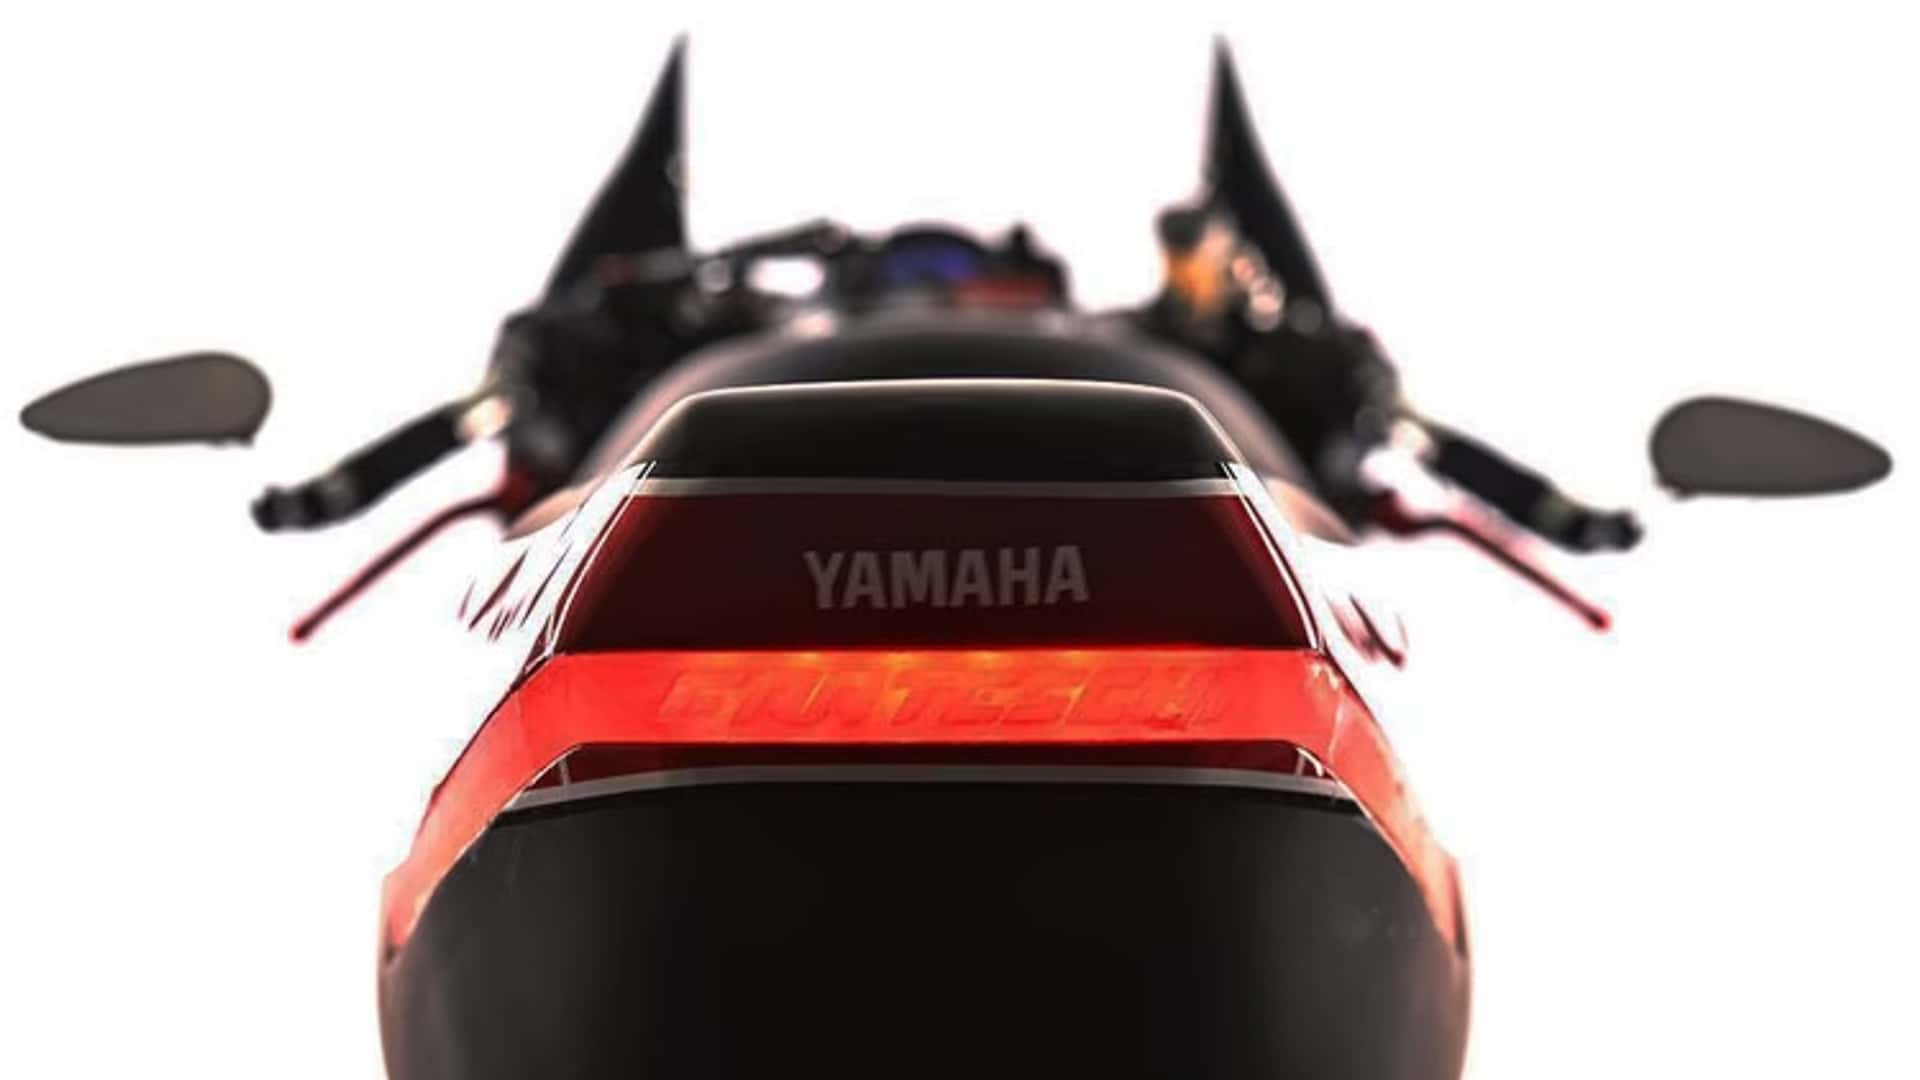 Yamaha Rd R Turbo Caf Raceryzf R Rd Lc